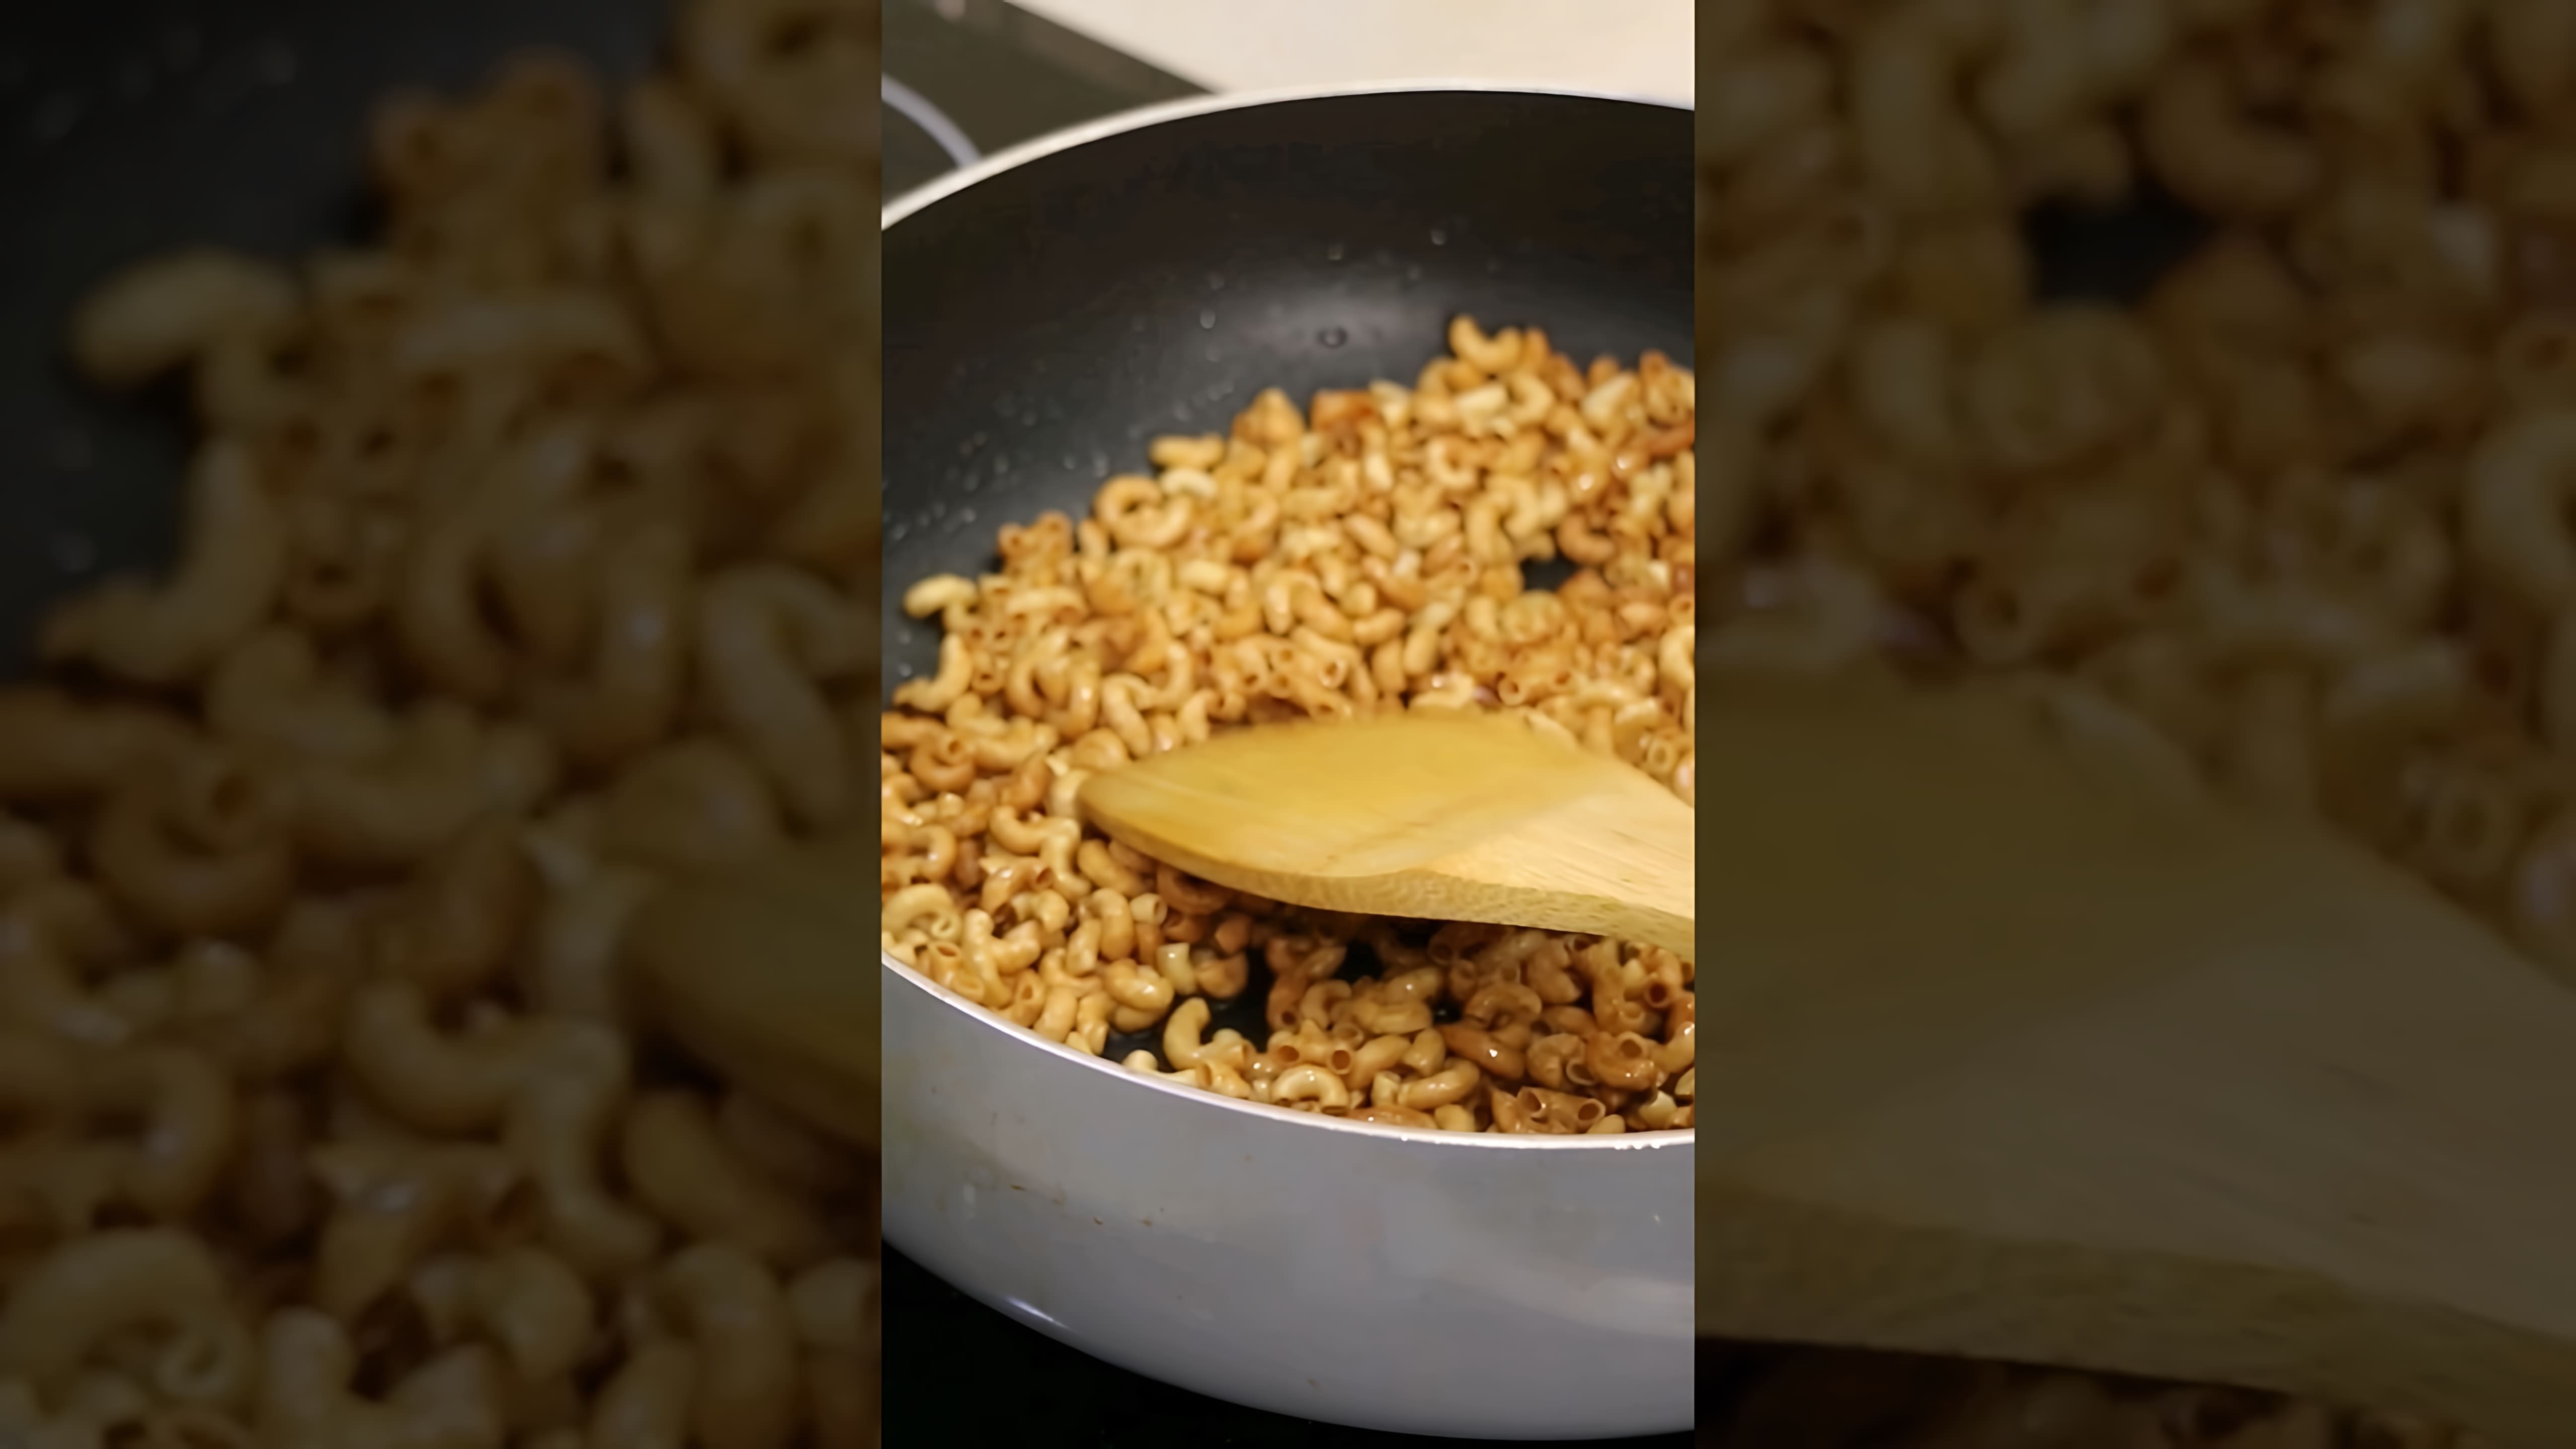 В этом видео демонстрируется процесс приготовления жареных макаронных изделий